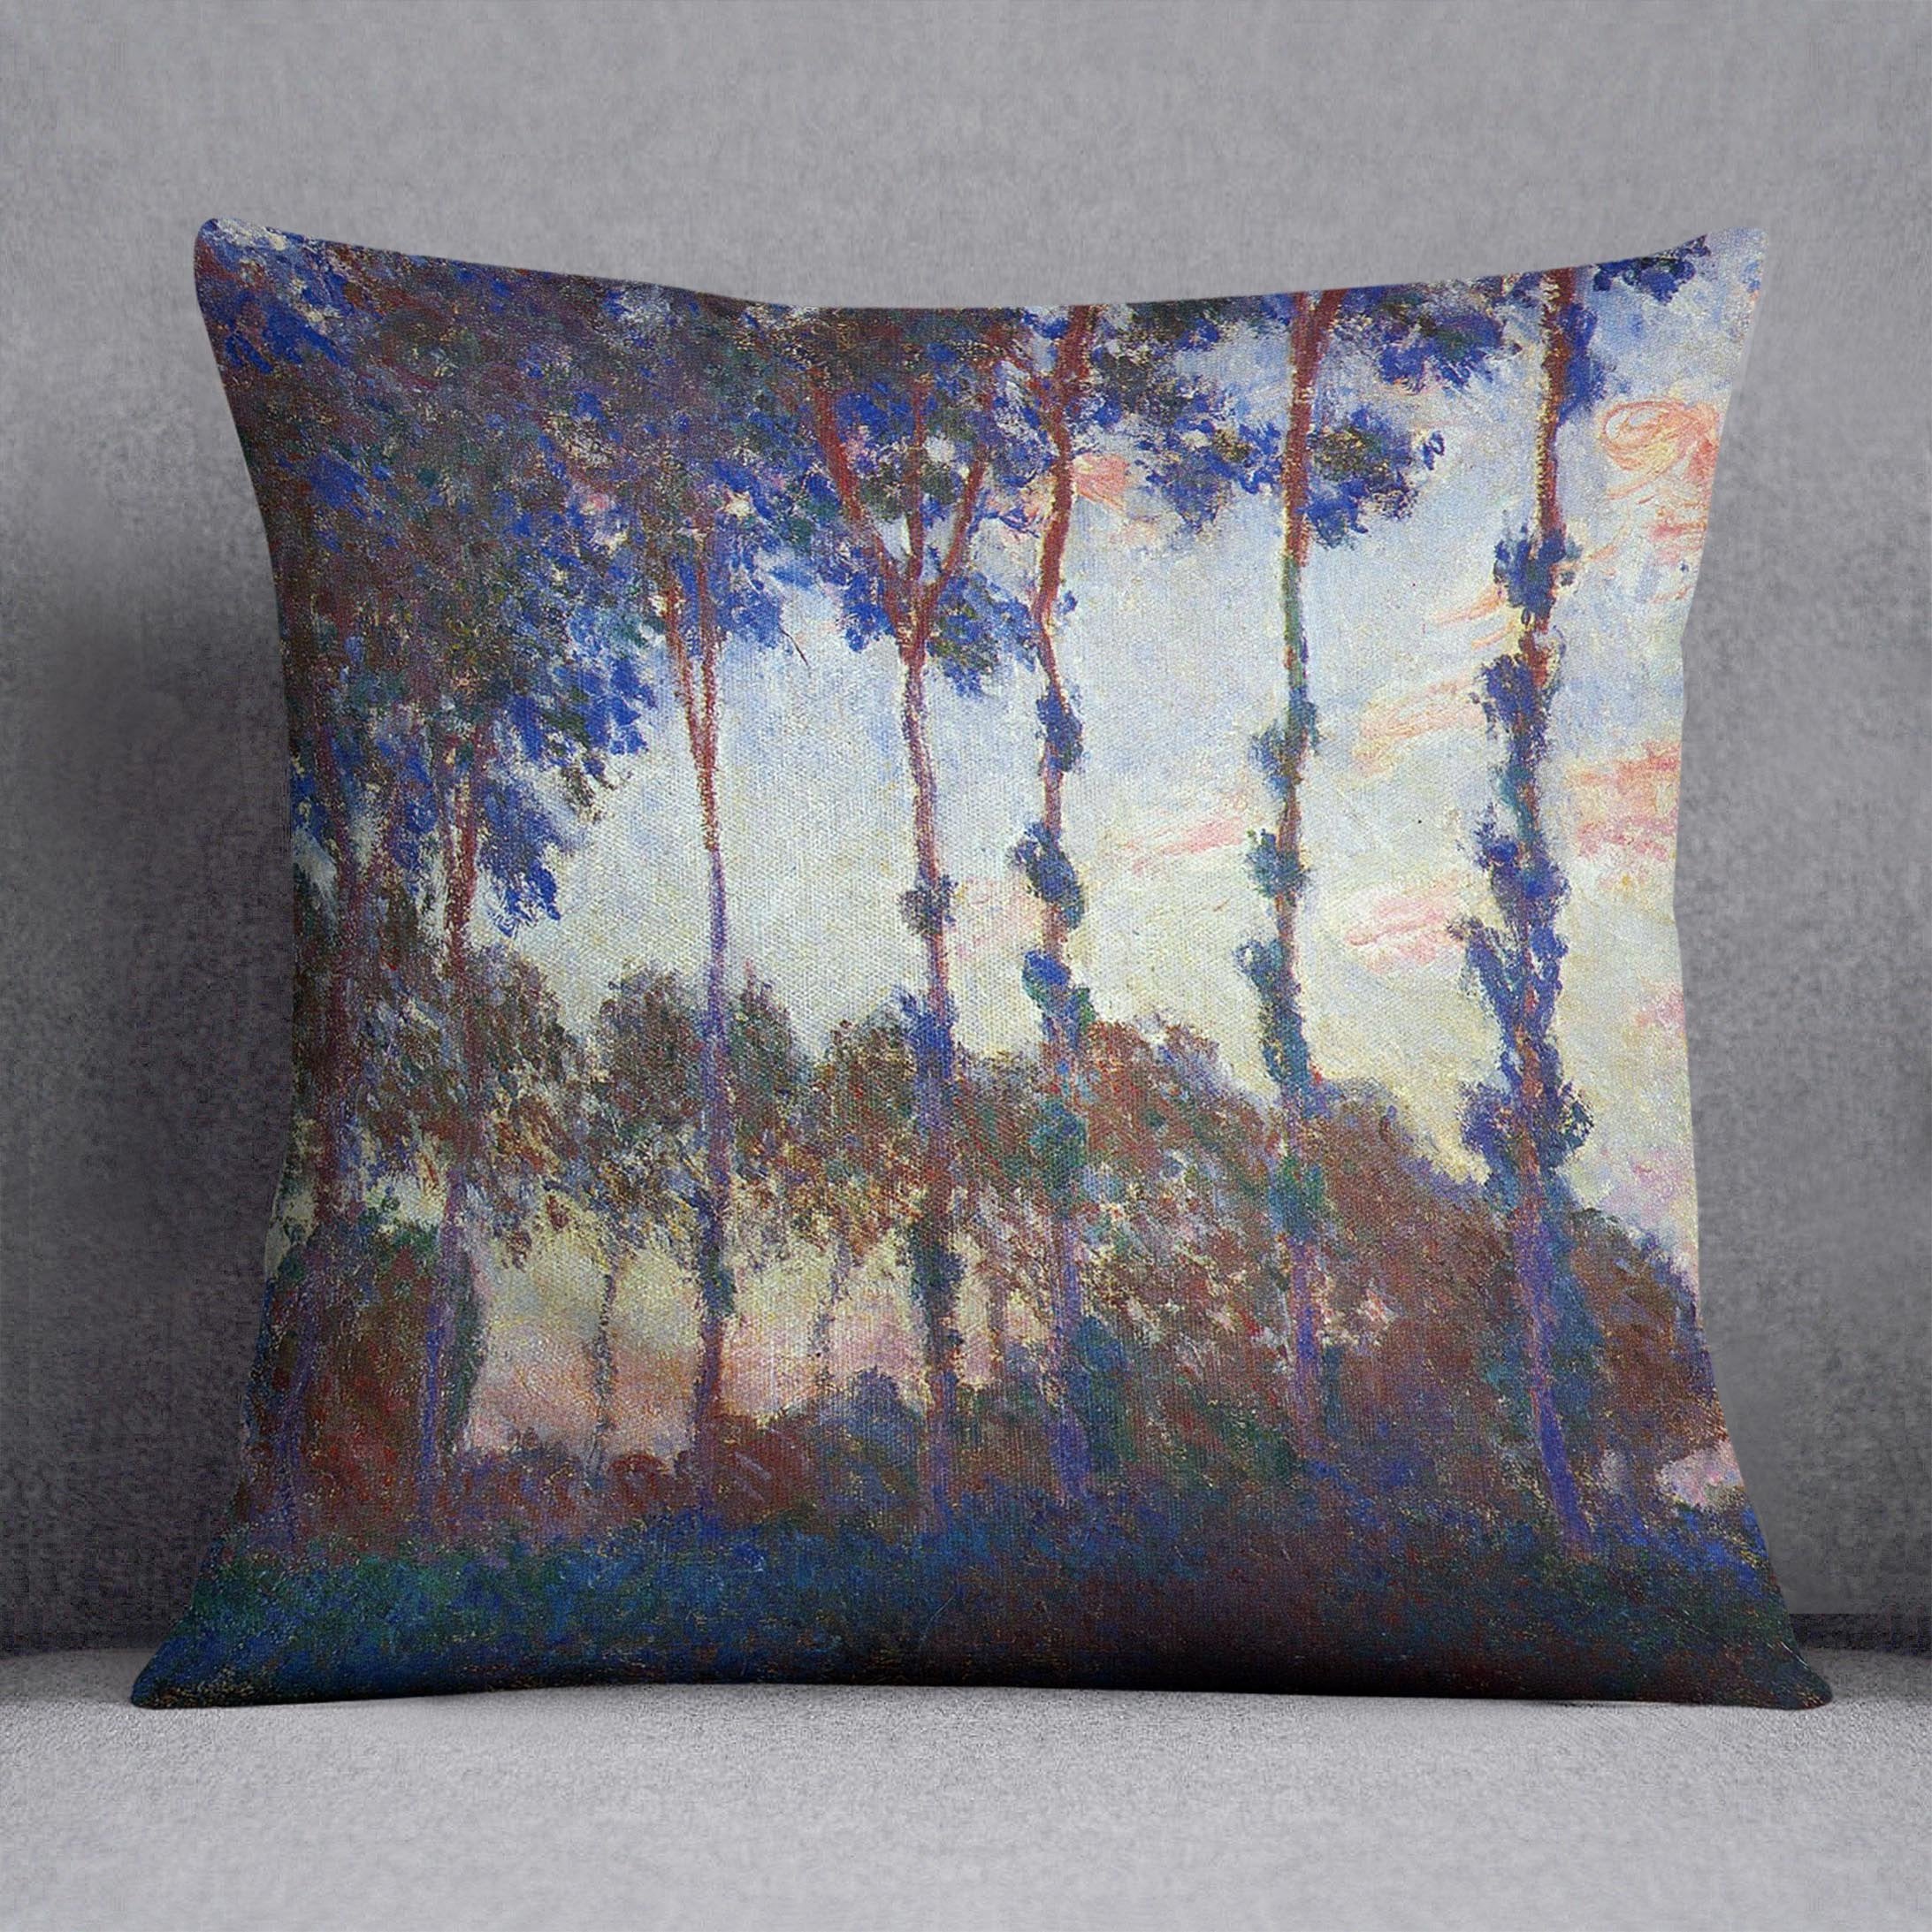 Poplars sunset by Monet Throw Pillow